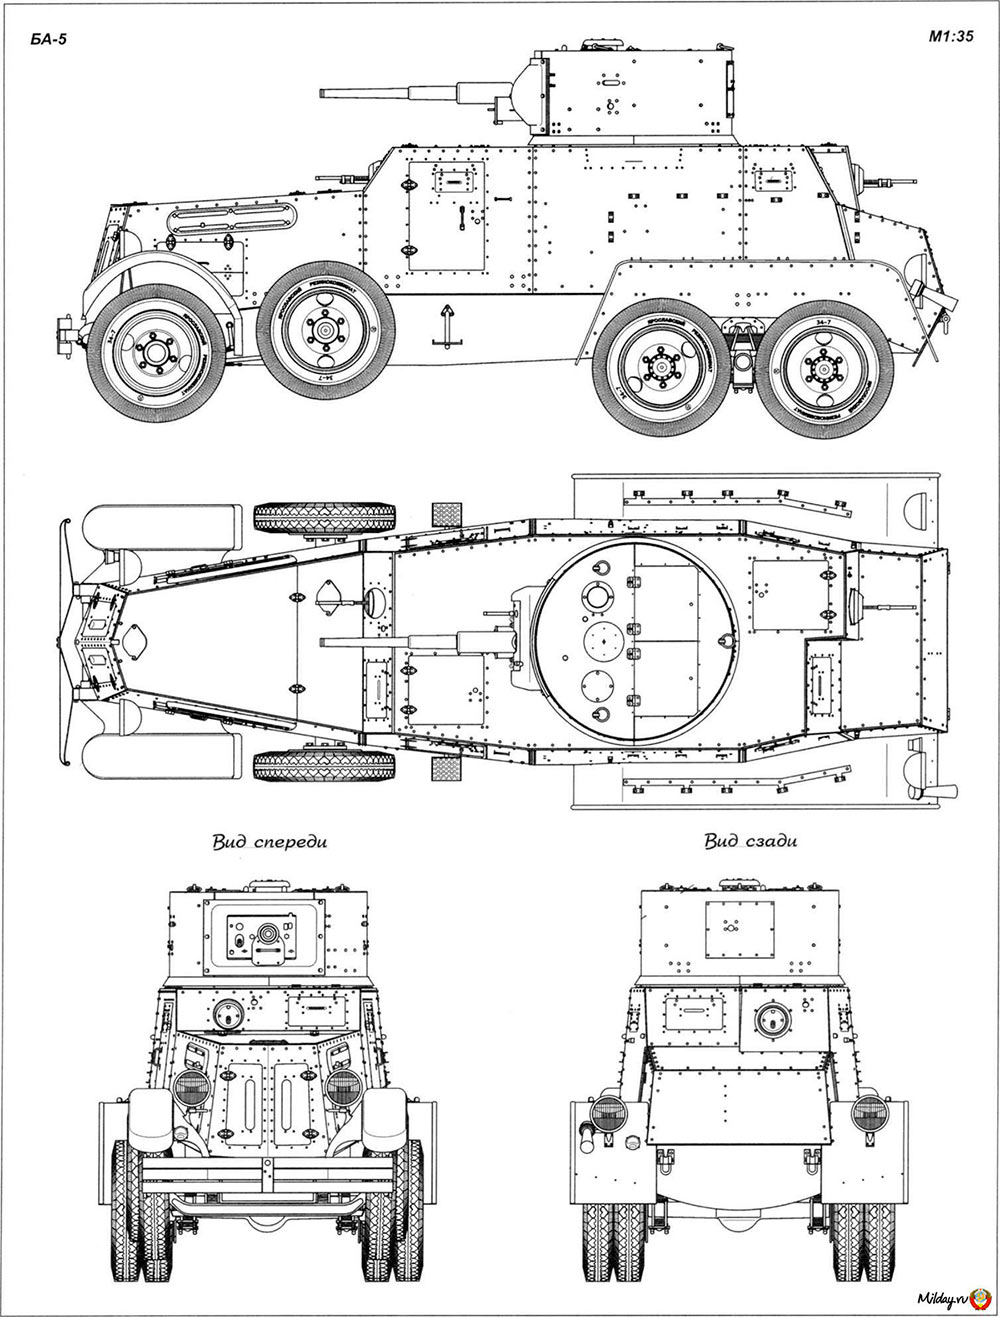 Чертеж тяжелого бронеавтомобиля БА-5